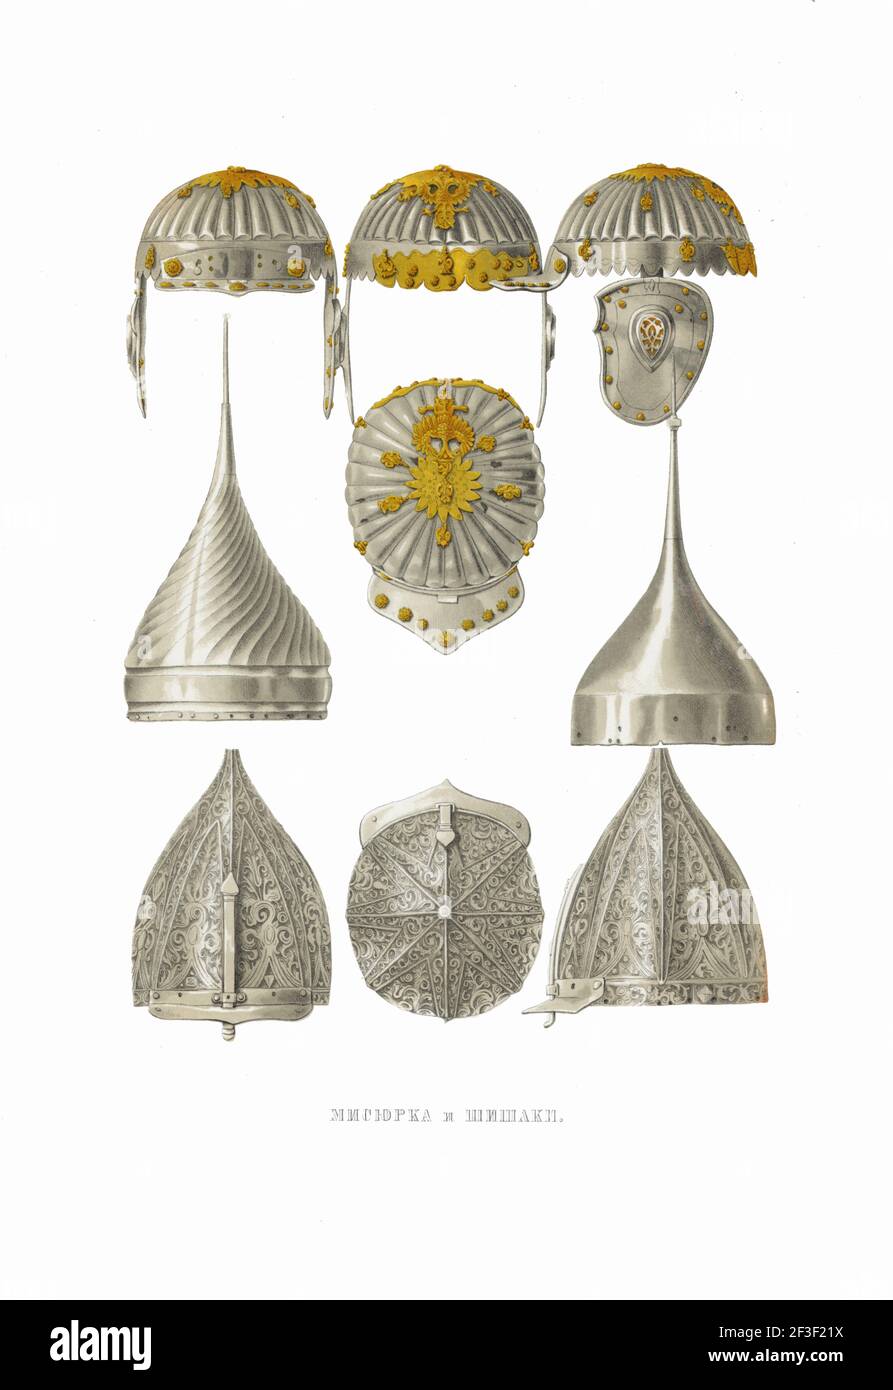 Misiurka Helmet y Shishaks. De las Antigüedades del Estado Ruso, 1849-1853. Colección privada. Foto de stock